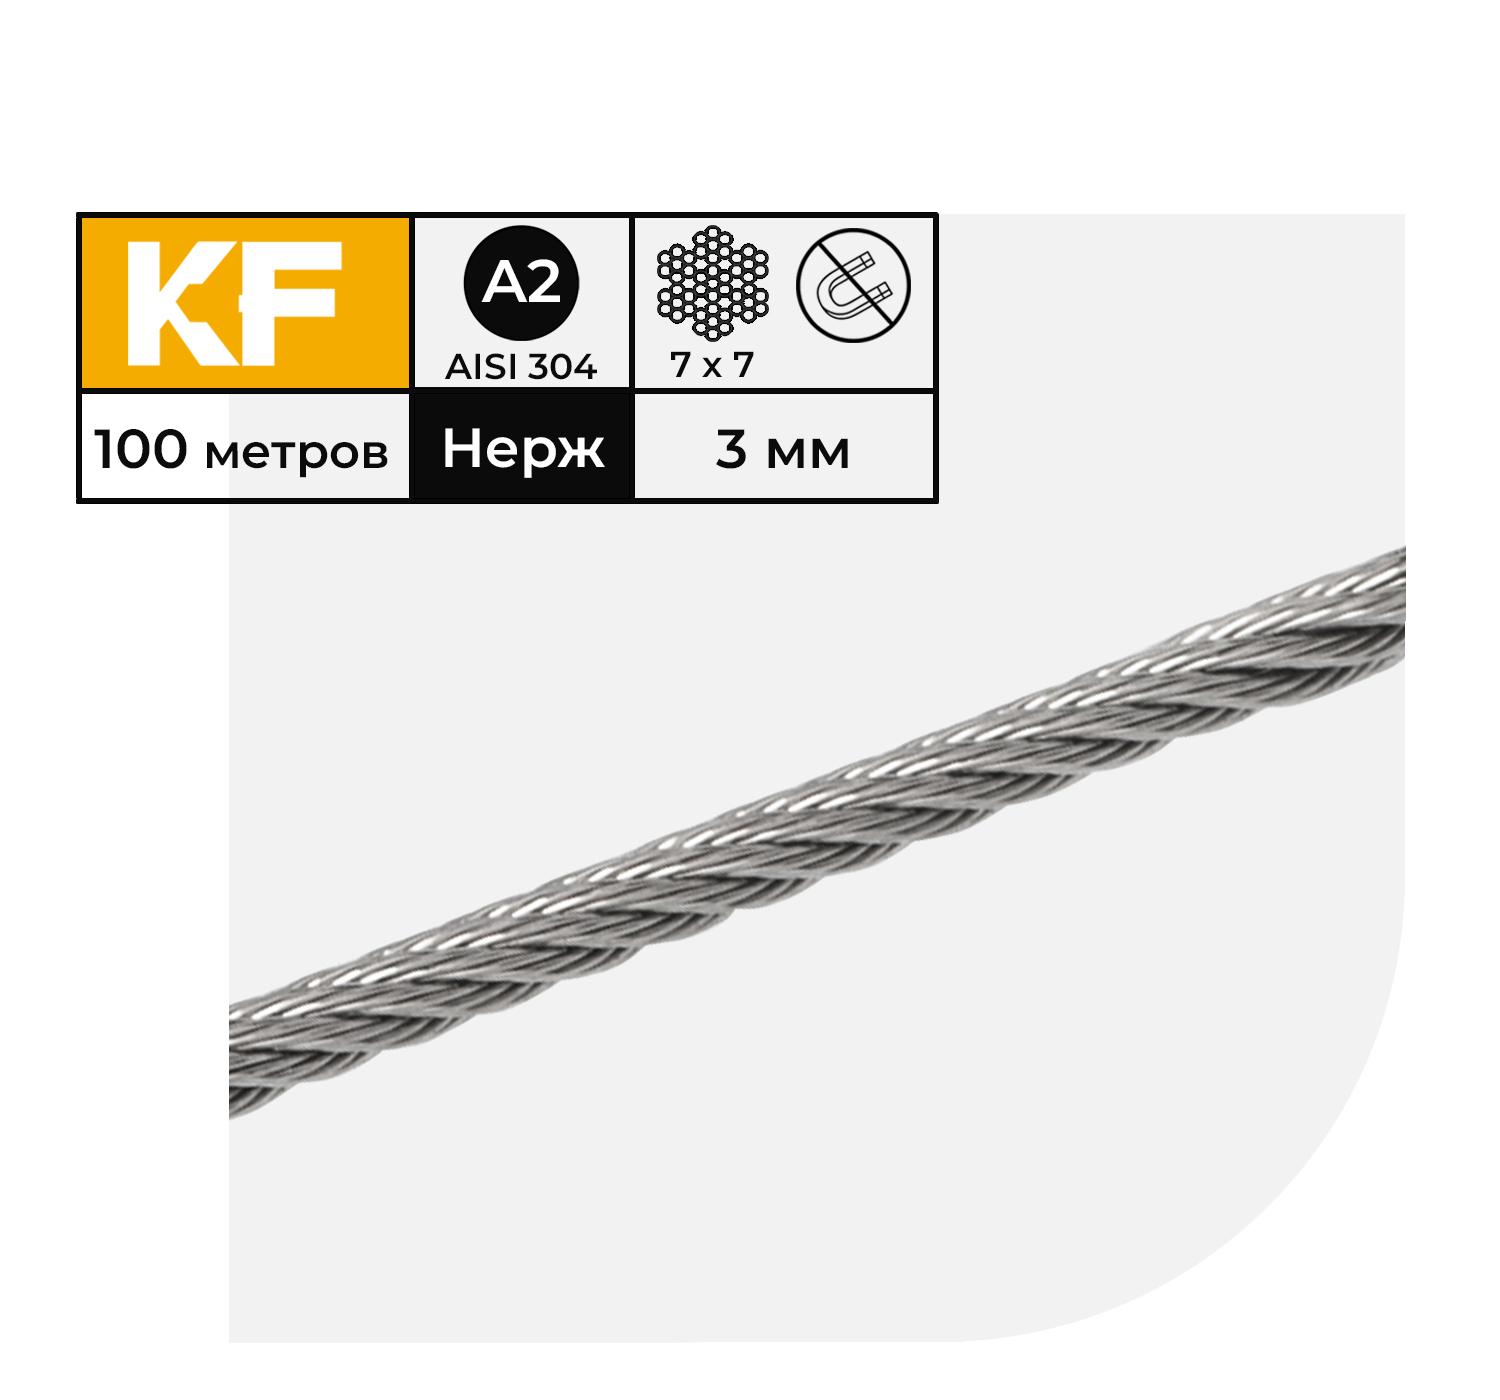 Трос нержавеющий KREPFIELD 3 мм сталь А2 плетение 7х7 средней мягкости 100 метров